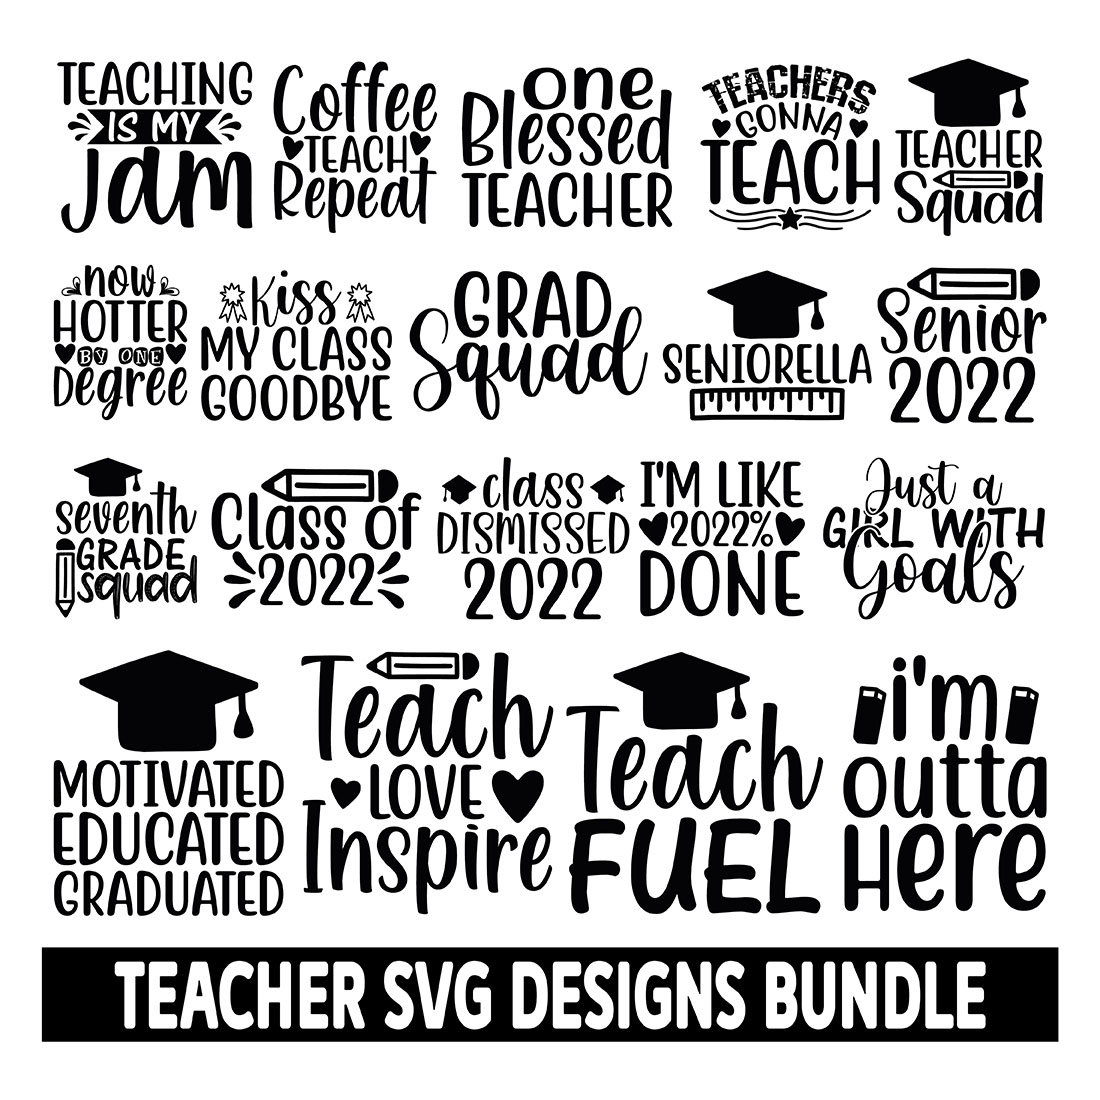 25 Teacher SVG Designs Bundle main cover